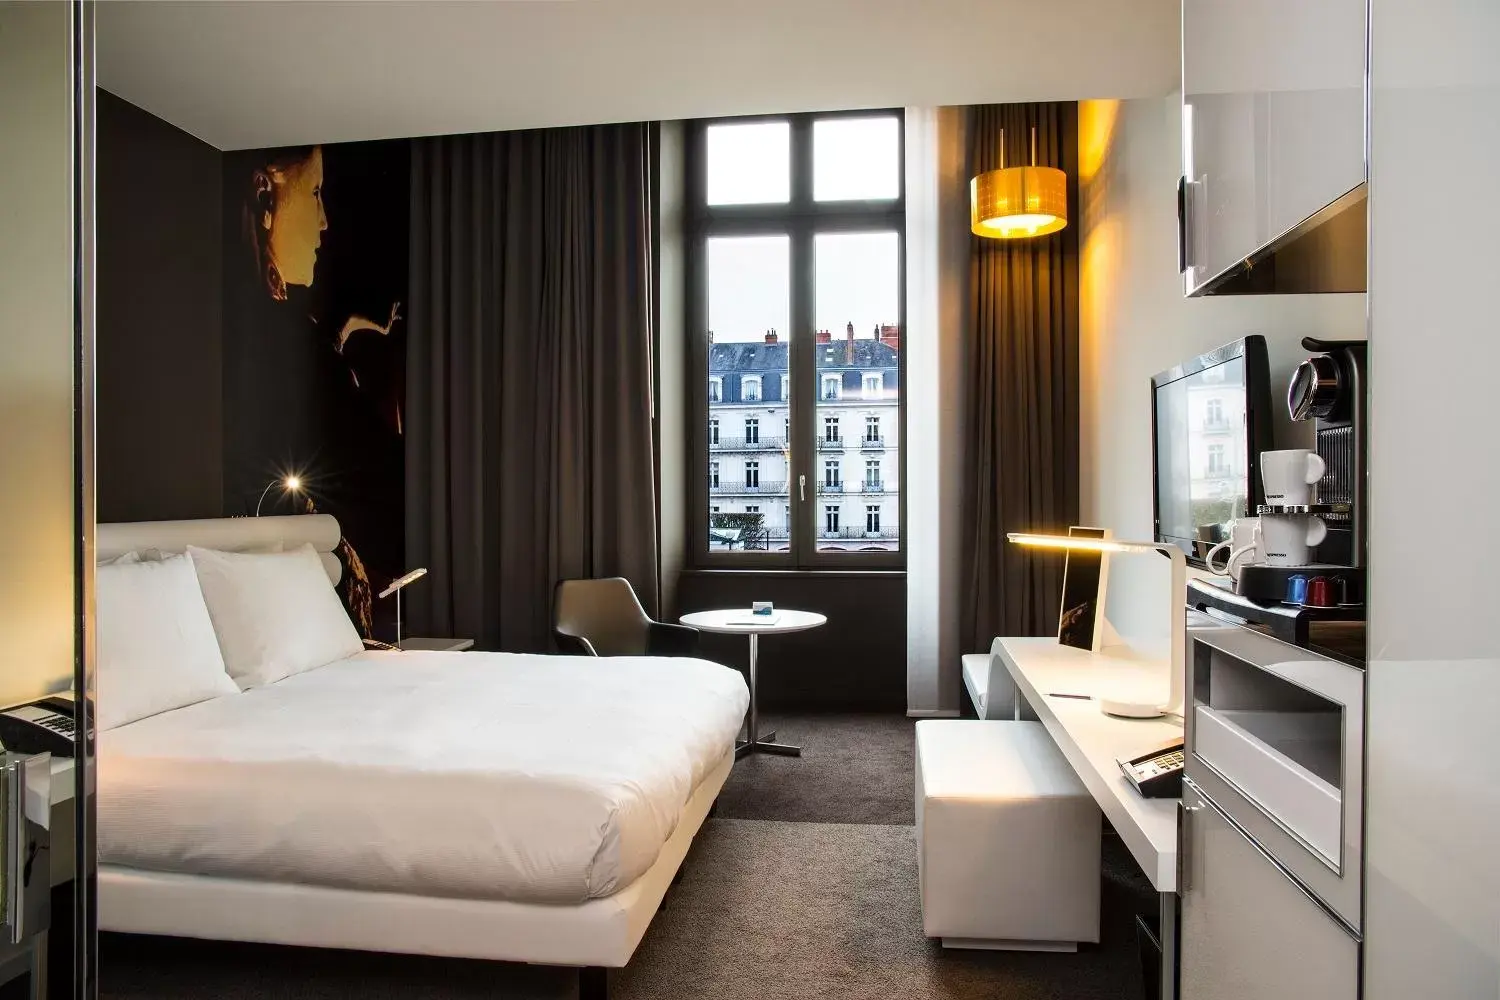 Bedroom in Radisson BLU Hotel Nantes